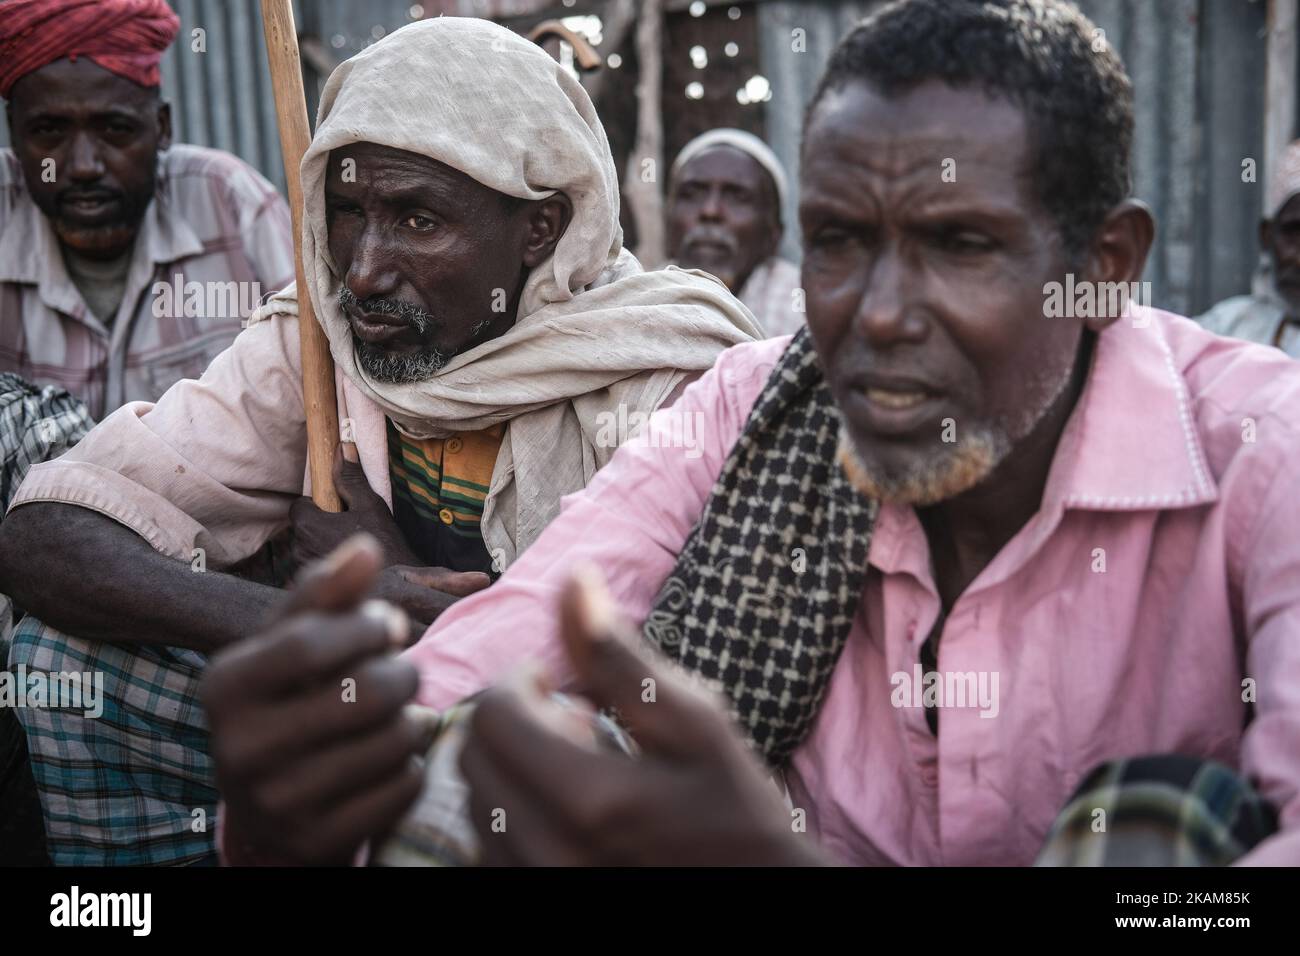 MOGADISHU, SOMALIA - 25 DE MARZO de 2017 - Hombres en el campamento de desplazados internos. Somalia en medio de una crisis alimentaria sin precedentes y devastadora. La sequía ha provocado la caída de los cultivos y la muerte del ganado en Somalia, lo que ha provocado una grave escasez de alimentos y agua. Los brutales conflictos en Sudán del Sur, Yemen, Nigeria y Somalia han expulsado a millones de personas de sus hogares y han dejado a millones más necesitados de alimentos de emergencia. En Somalia, donde los brotes de cólera han matado a cientos de personas, la hambruna que se avecina amenaza a 6,2 millionâ, más de la mitad de la población. Amenaza con traer de vuelta la sombría realidad de 2011, cuando 260.000 somalíes Foto de stock